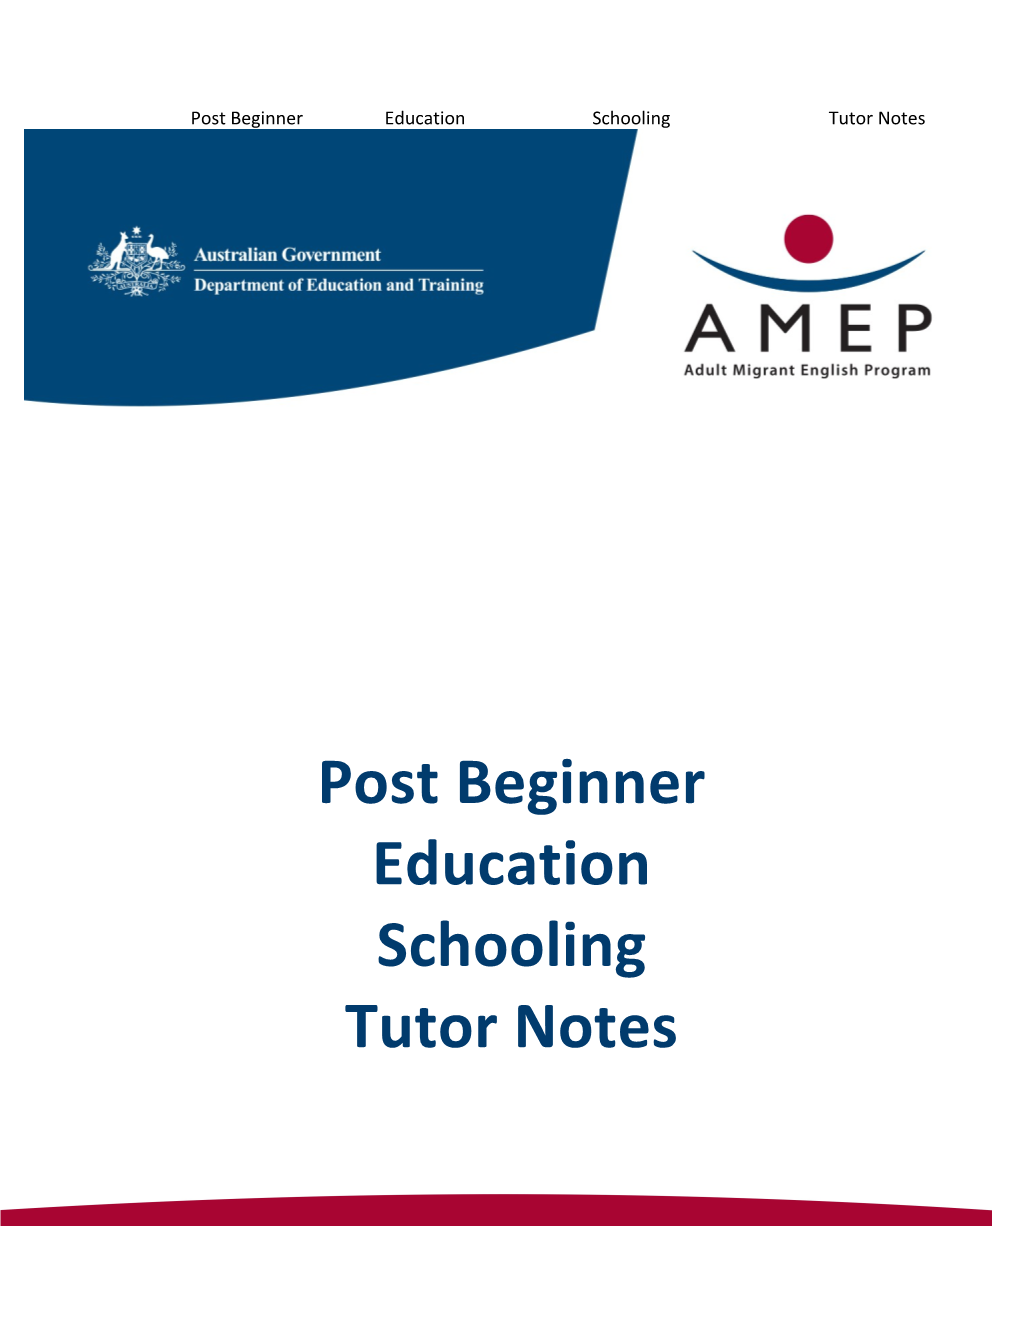 Post Beginner Education Schooling Tutor Notes